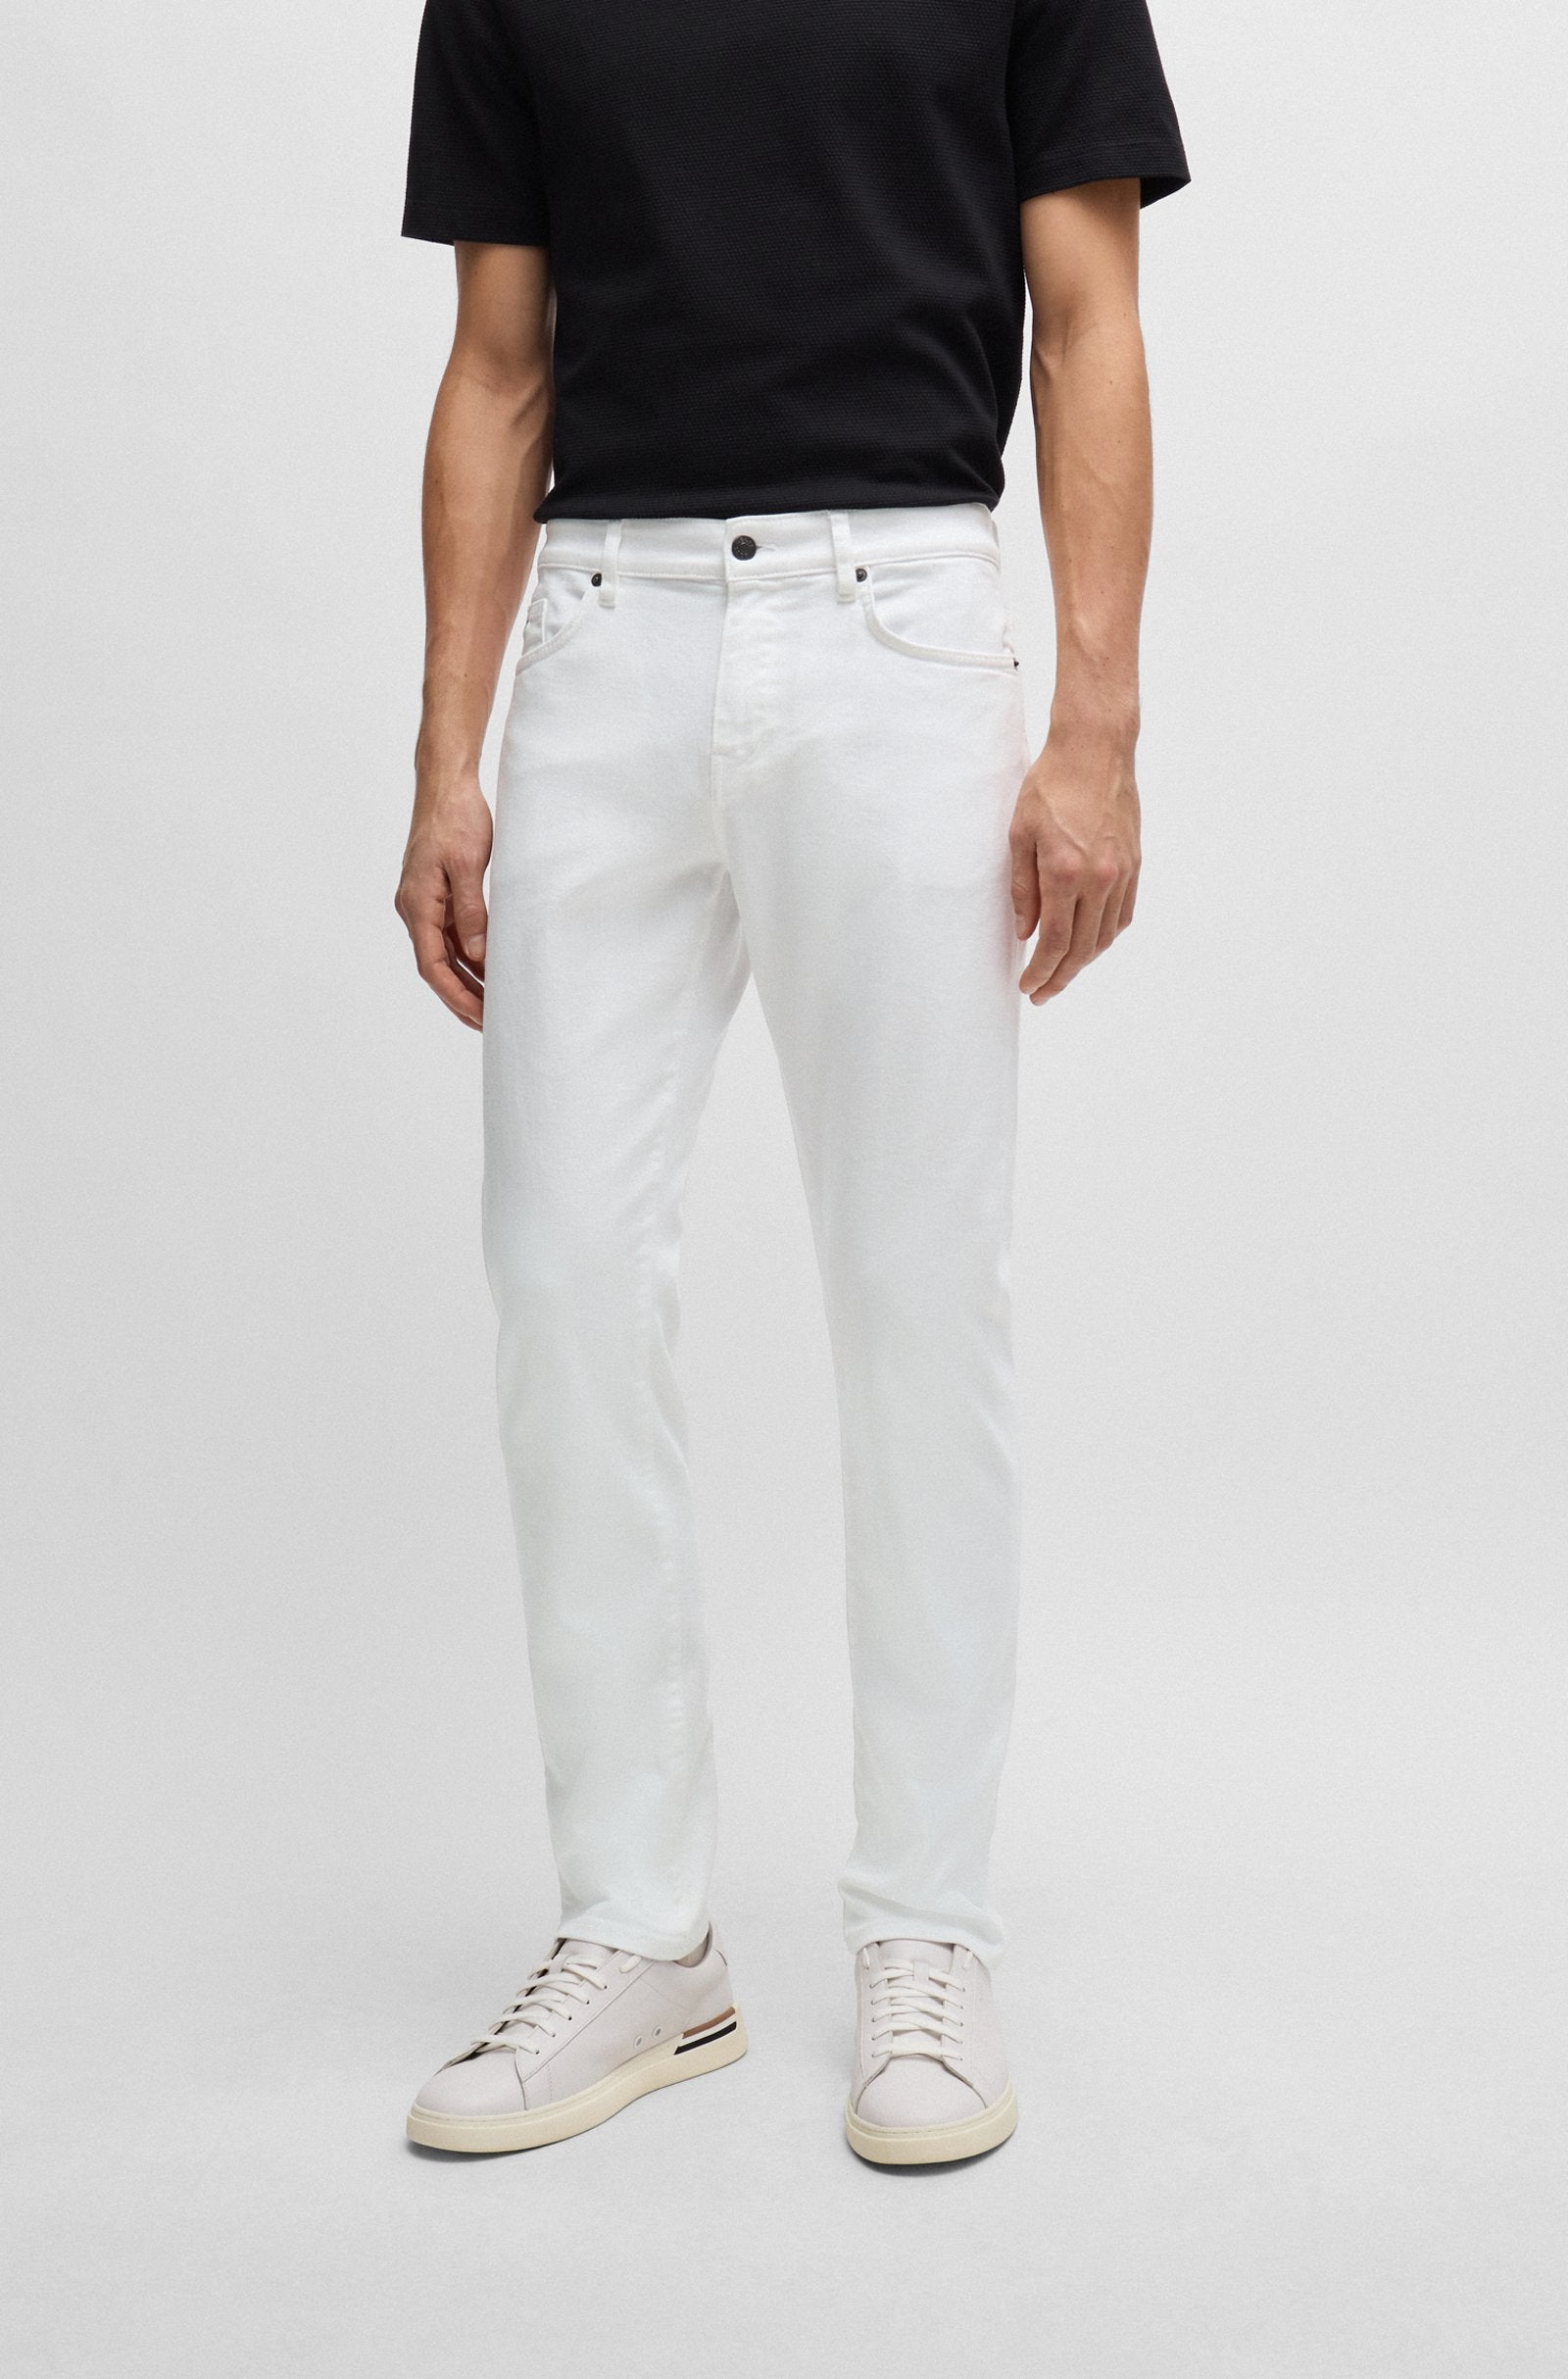 BOSS Black Delaware3-1 Jeans 1021932 100 White